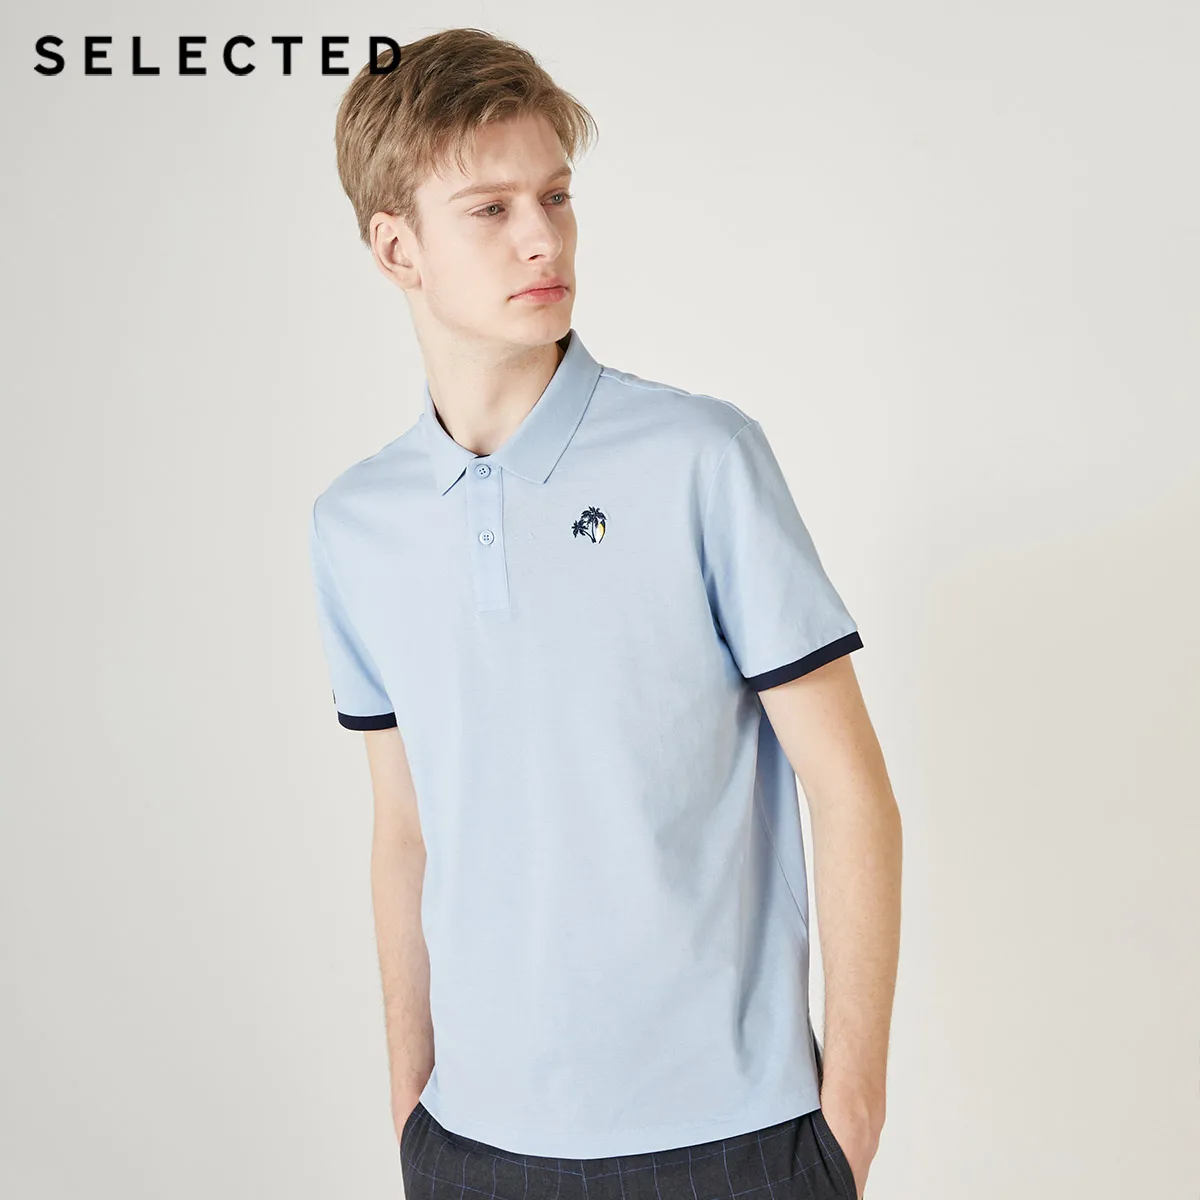 Мужская рубашка-поло с короткими рукавами и вышивкой с отложным воротником | 419206510 - Цвет: HAMBRAY BLUE